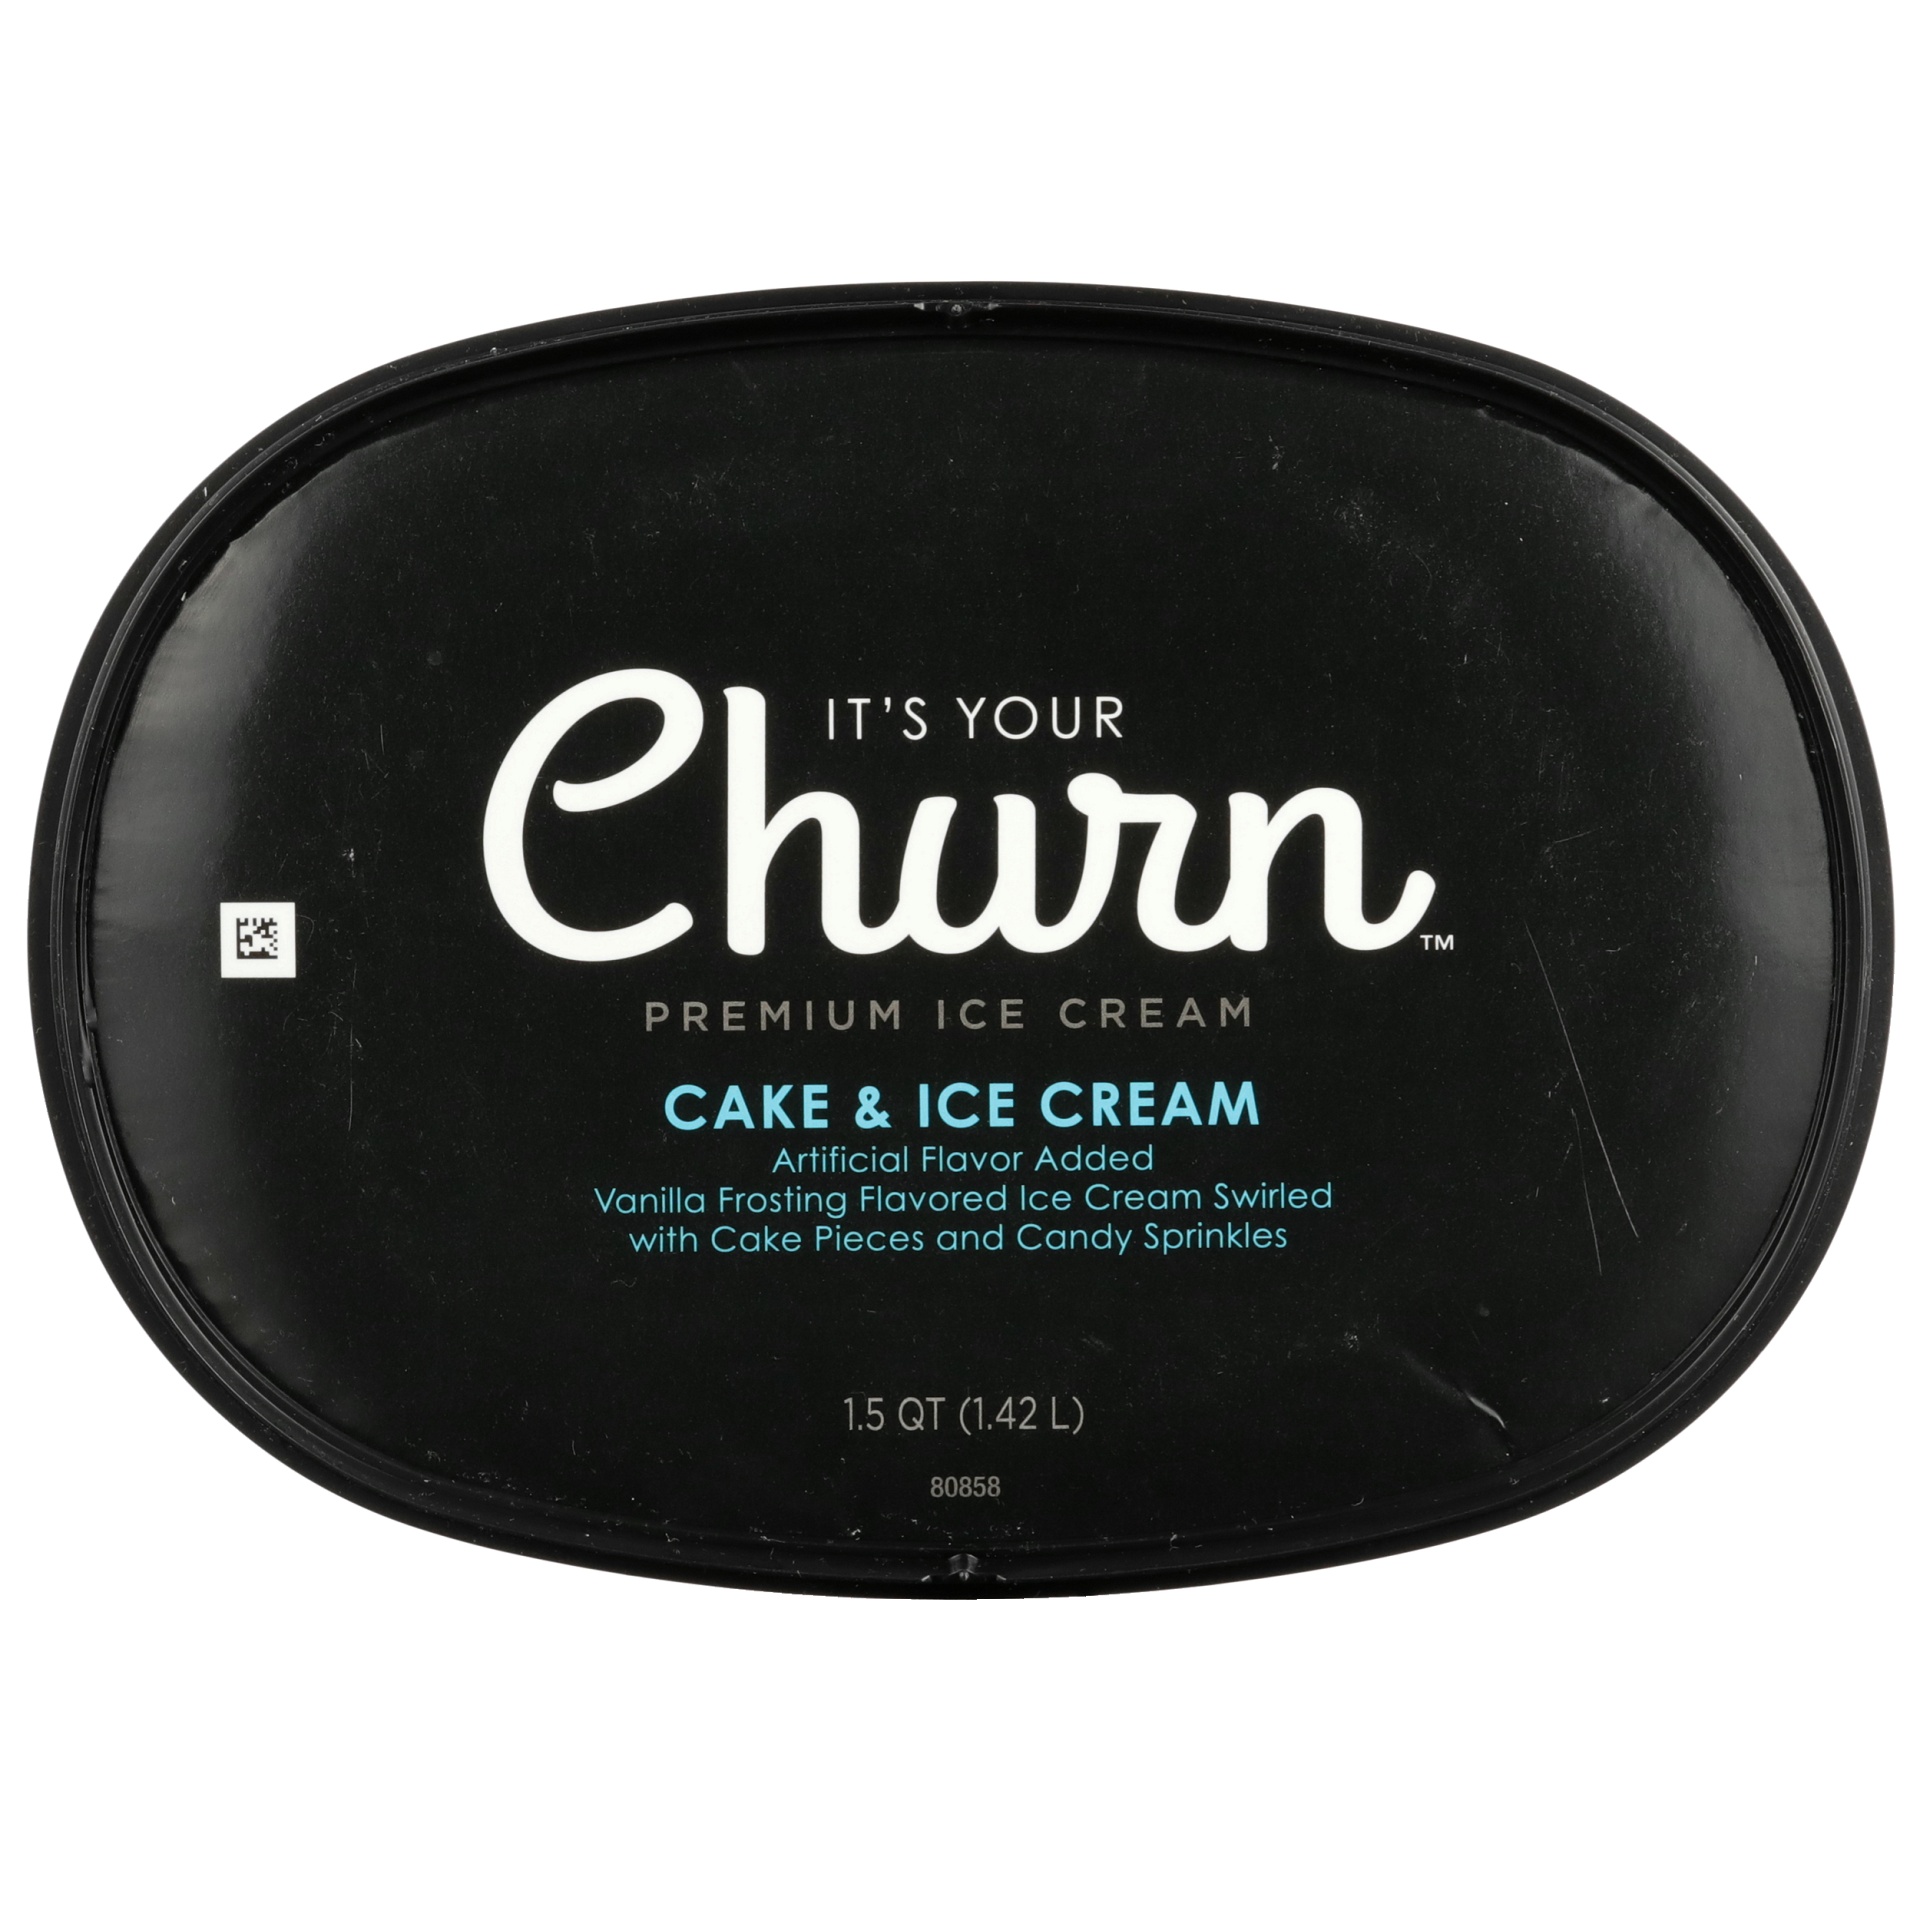 slide 2 of 6, It's Your Churn Premium Ice Cream Cake & Ice Cream, 1.5 qt